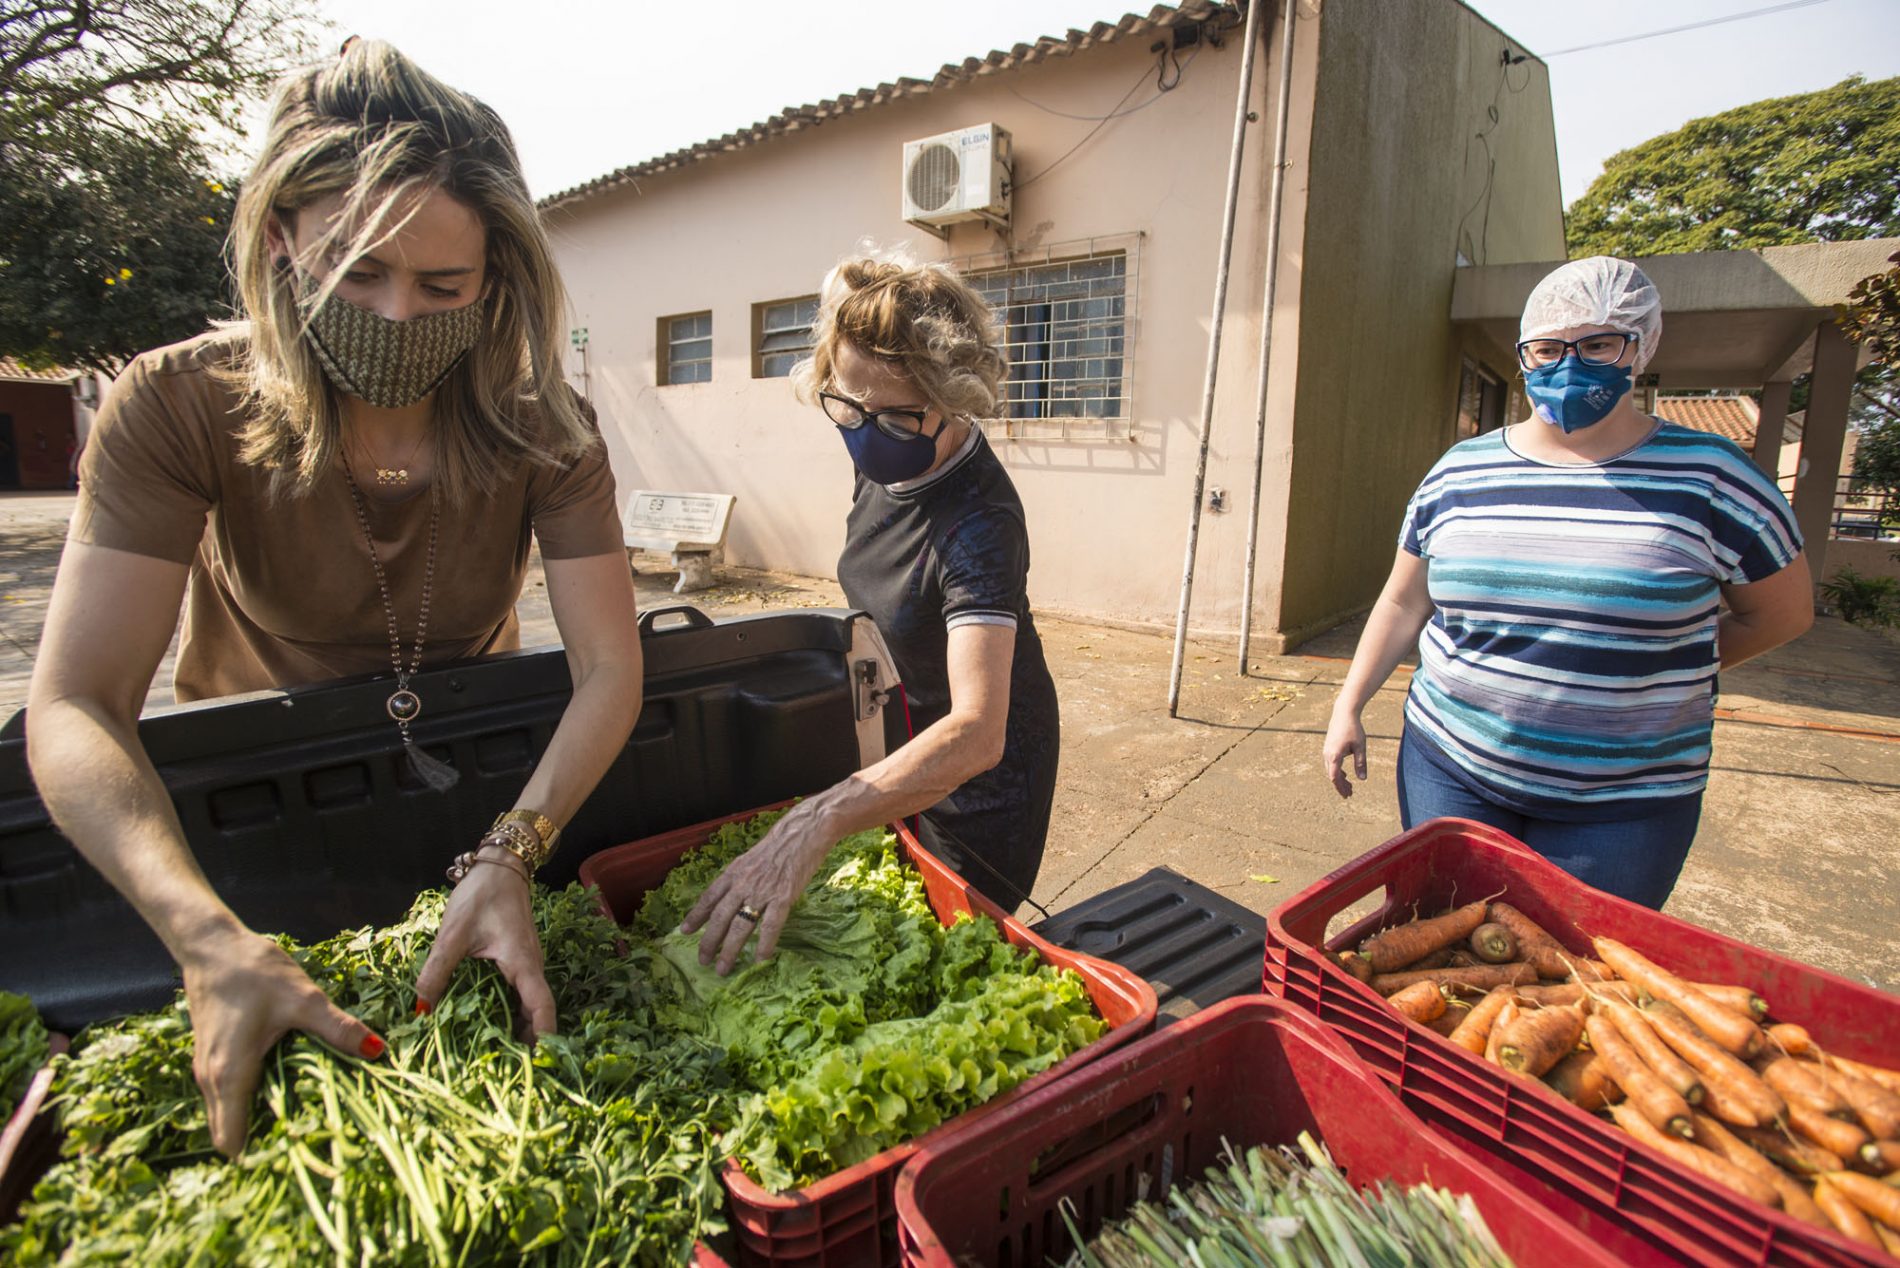 Entidades recebem a doação de hortaliças e verduras através do Fundo Social de Solidariedade de Barretos